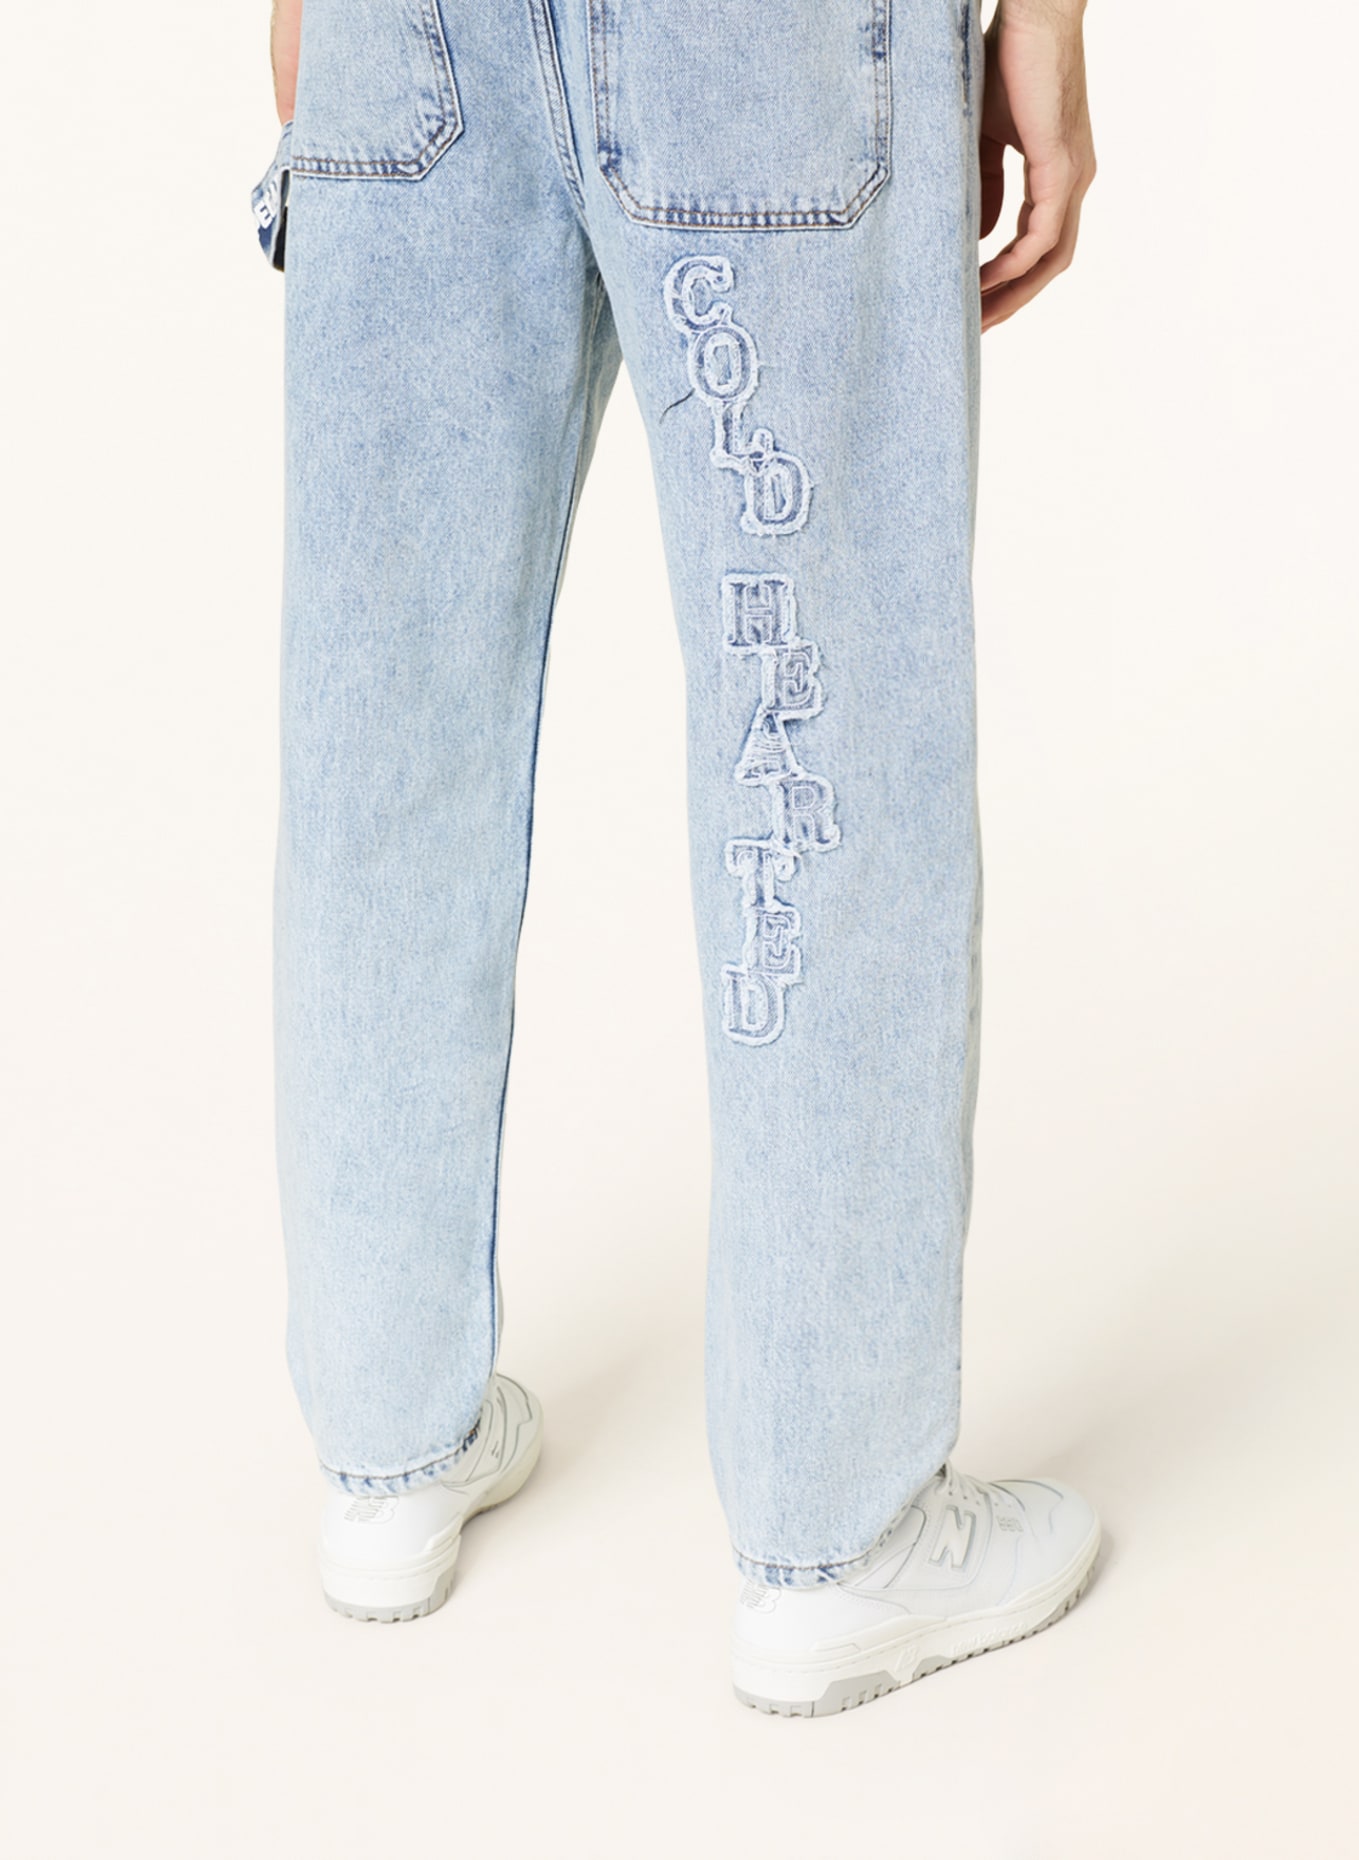 PEGADOR Jeans Slim Fit, Farbe: 076 washed light blue (Bild 6)